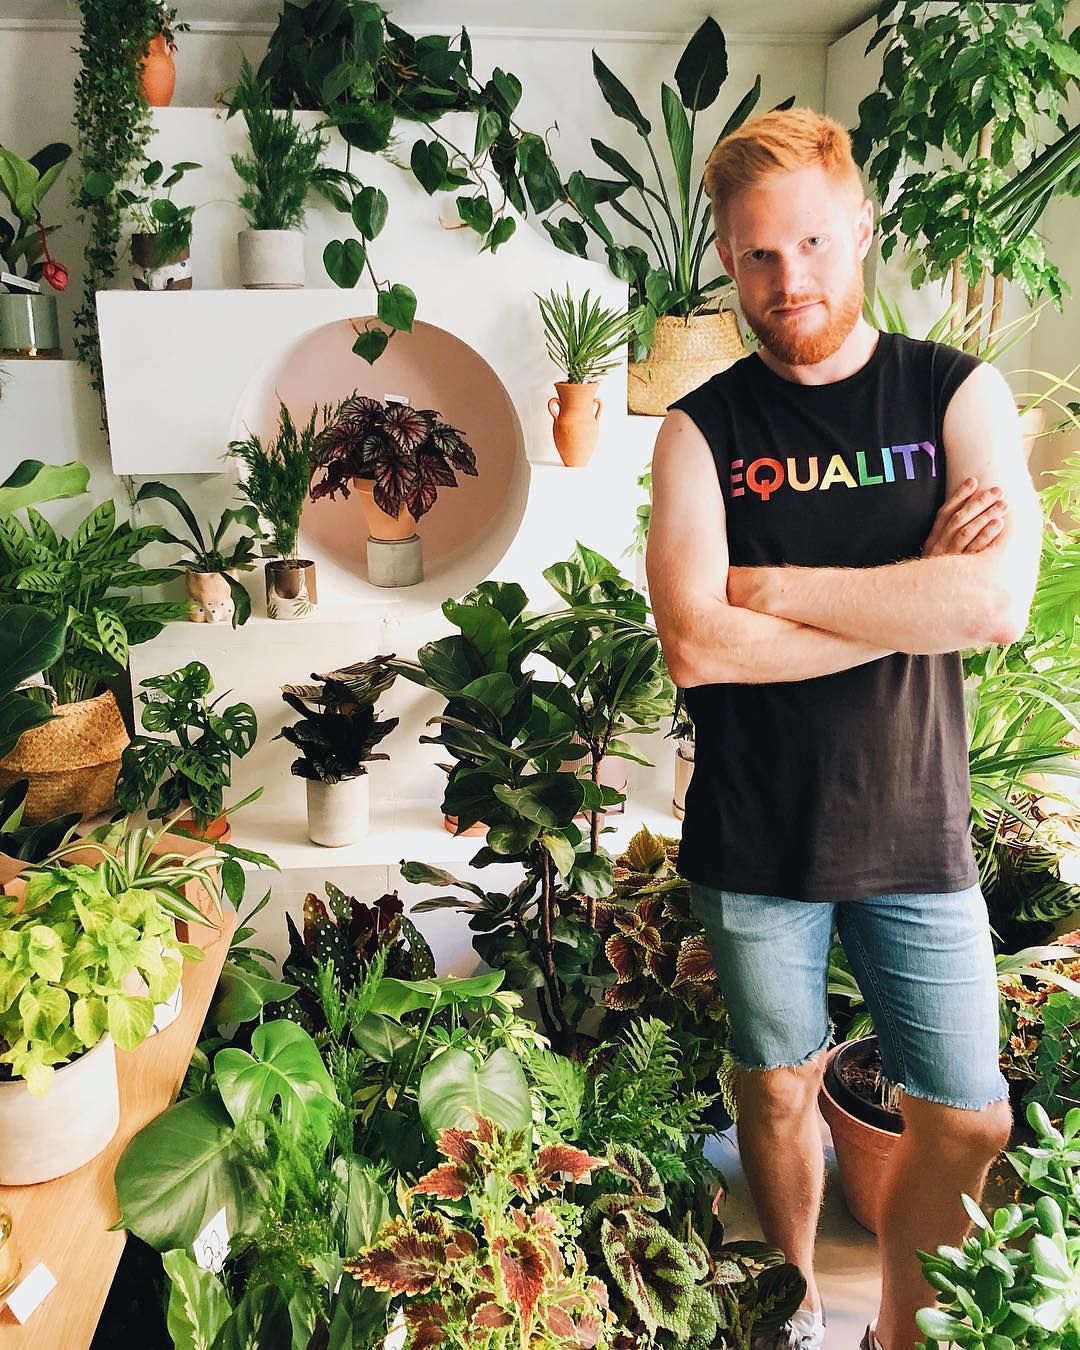 Популярный Instagram-аккаунт с полуголыми мужчинами и растениями